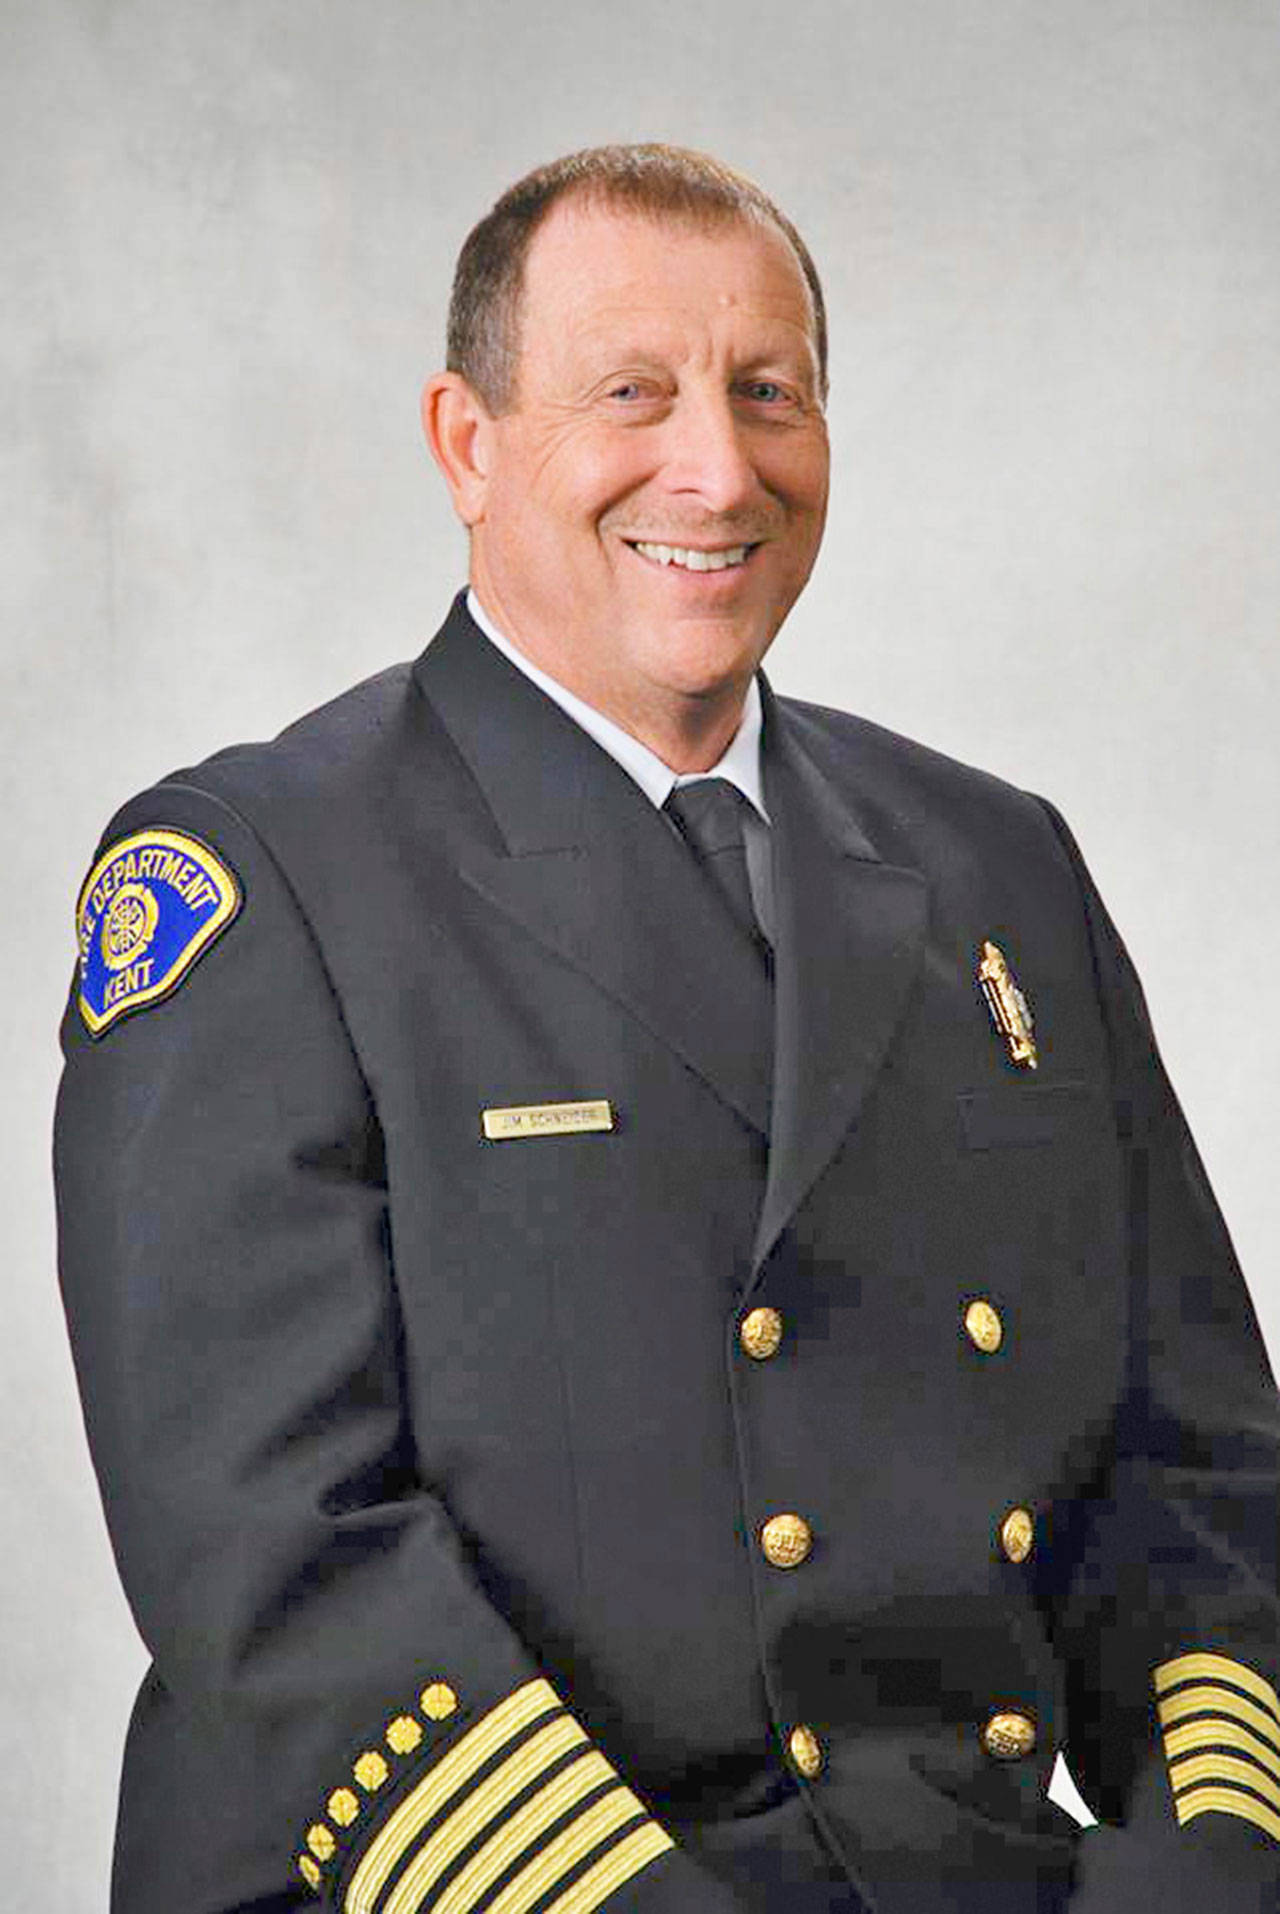 Jim Schneider. COURTESY PHOTO, Puget Sound Fire Authority